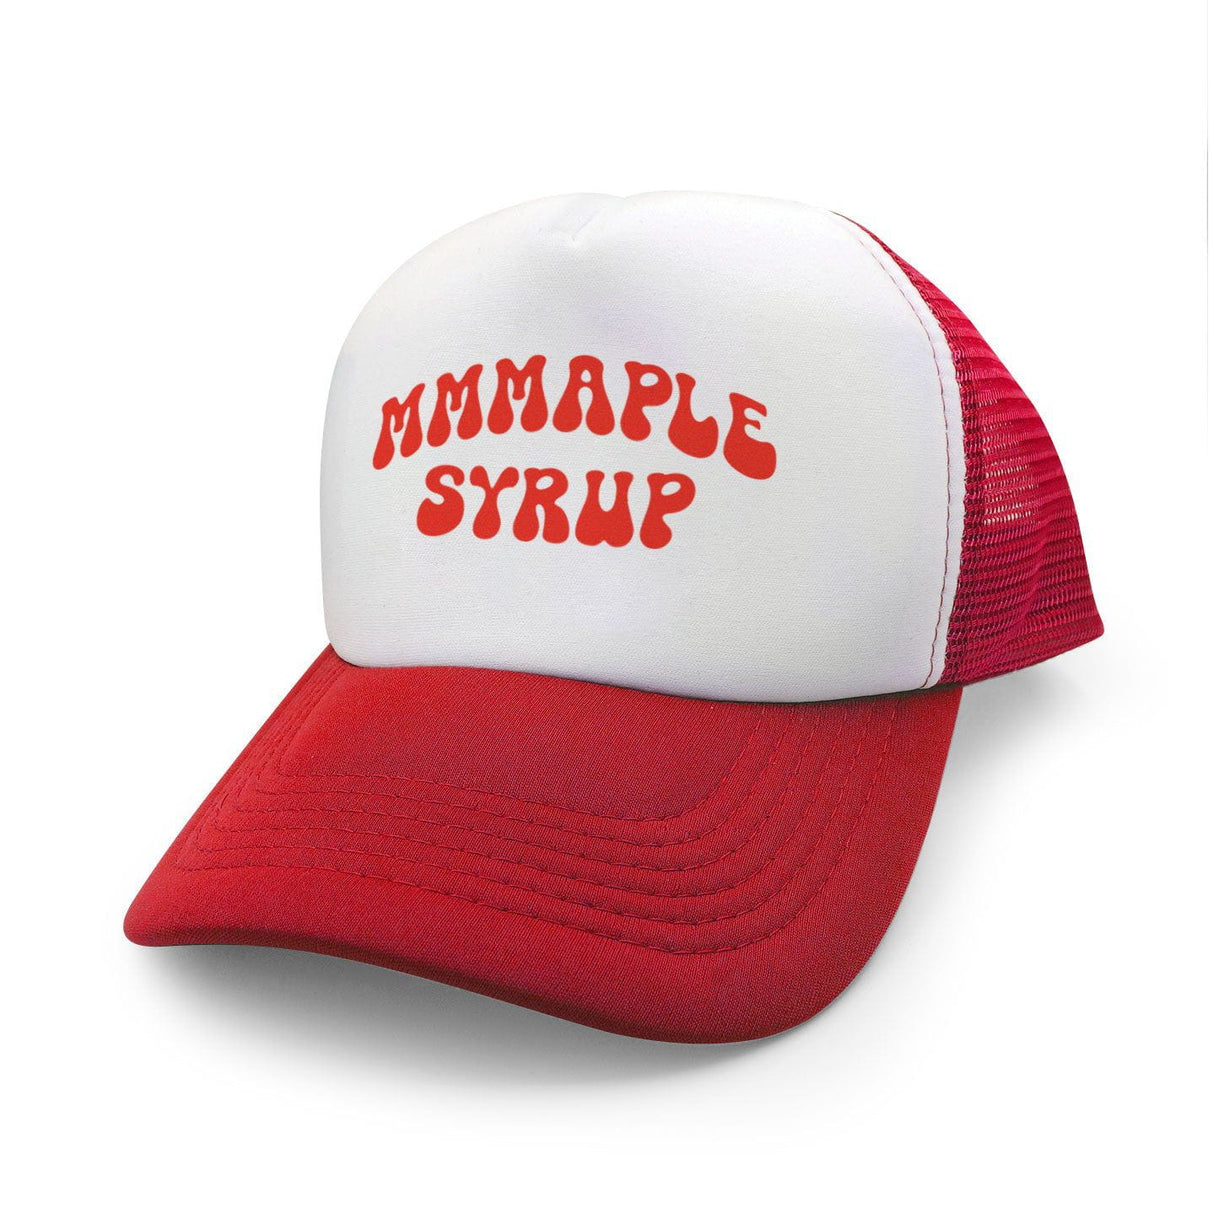 MMMaple Syrup Retro Foam Trucker Hat